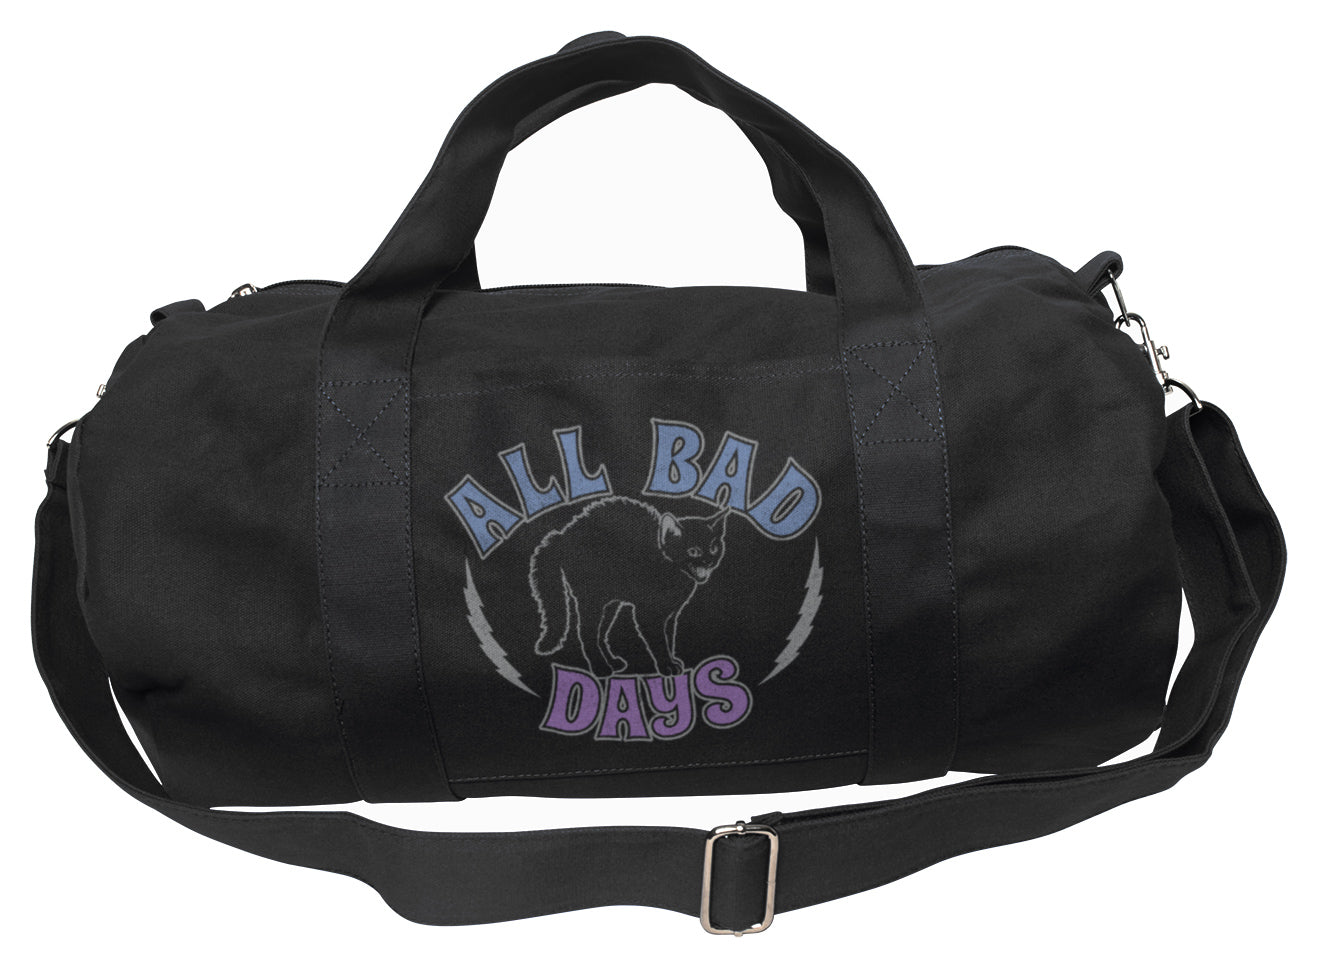 All Bad Days Duffel Bag